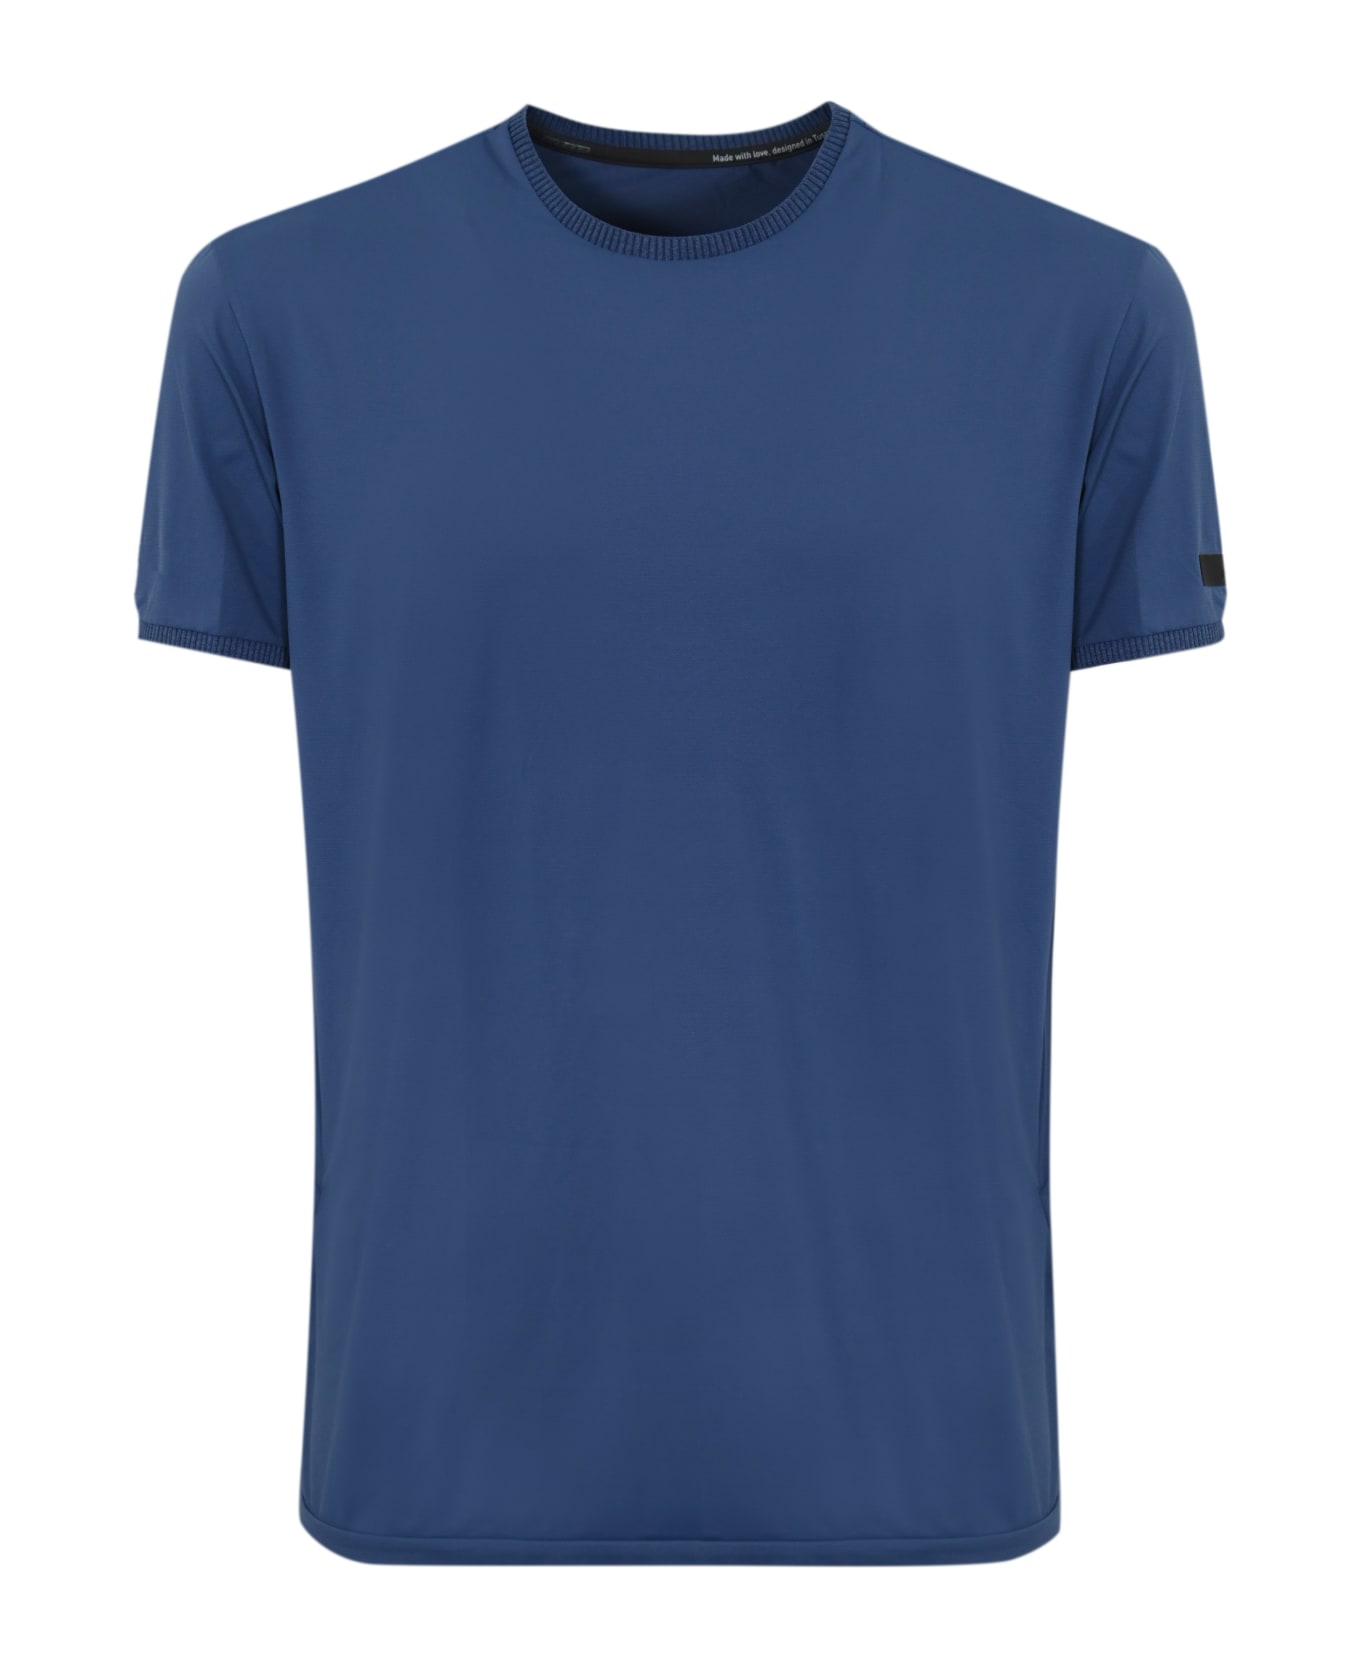 RRD - Roberto Ricci Design Gdy Oxford T-shirt - Blu new royal